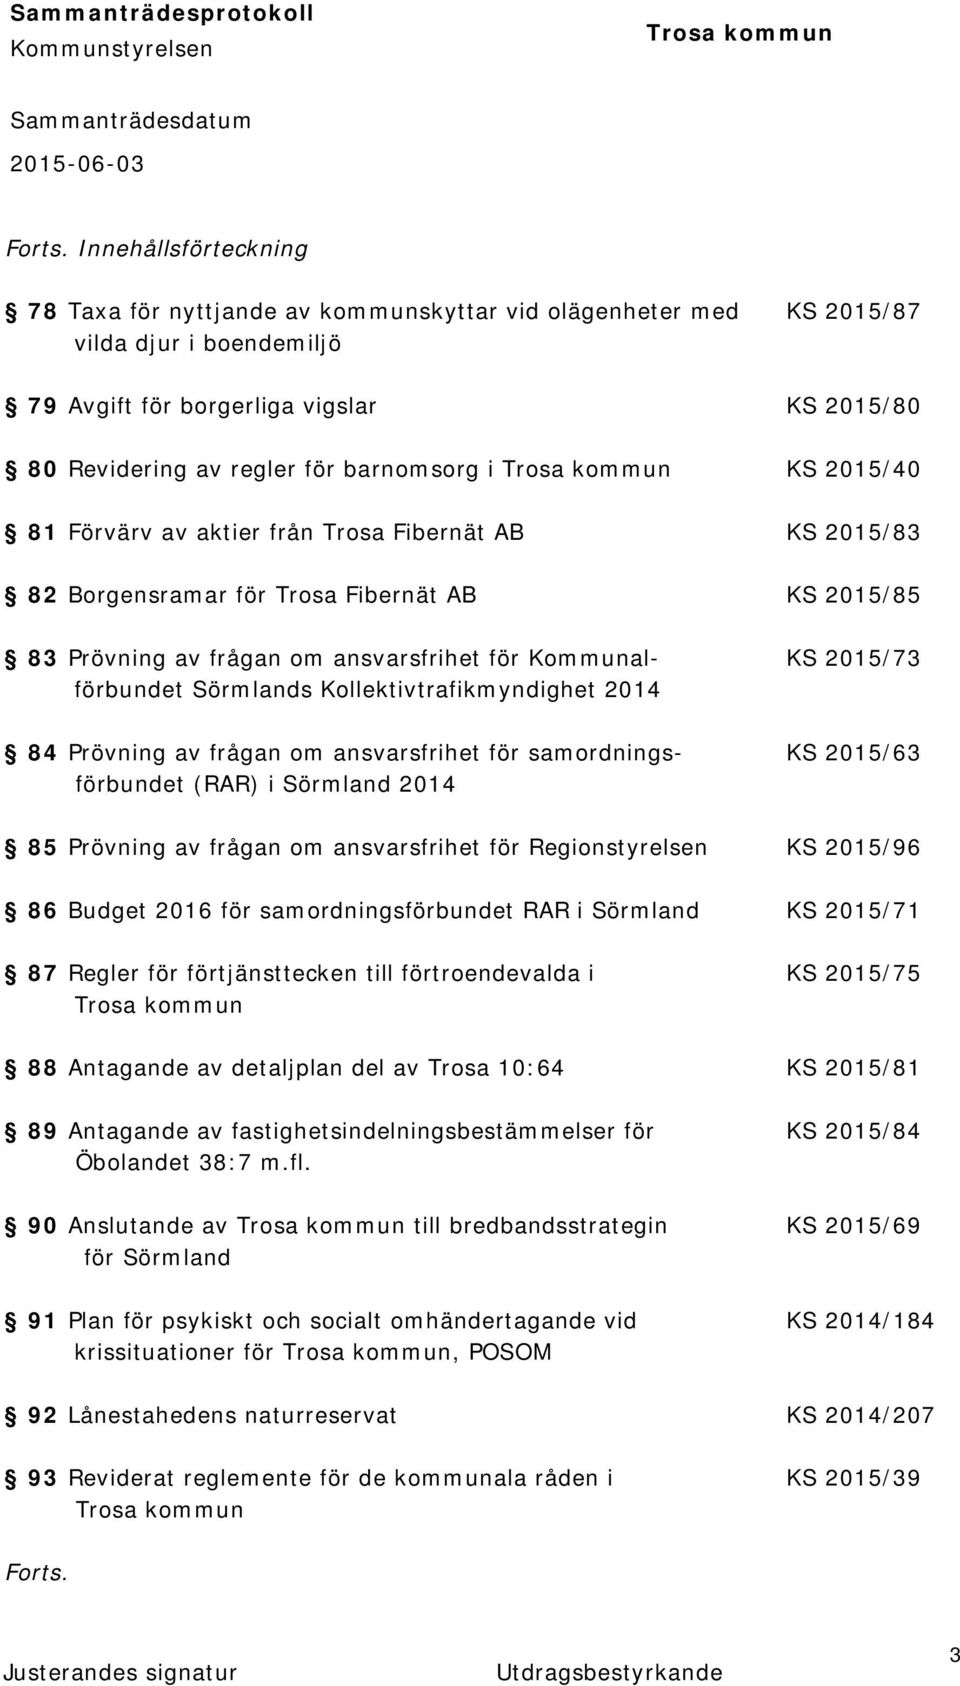 i KS 2015/40 81 Förvärv av aktier från Trosa Fibernät AB KS 2015/83 82 Borgensramar för Trosa Fibernät AB KS 2015/85 83 Prövning av frågan om ansvarsfrihet för Kommunal- KS 2015/73 förbundet